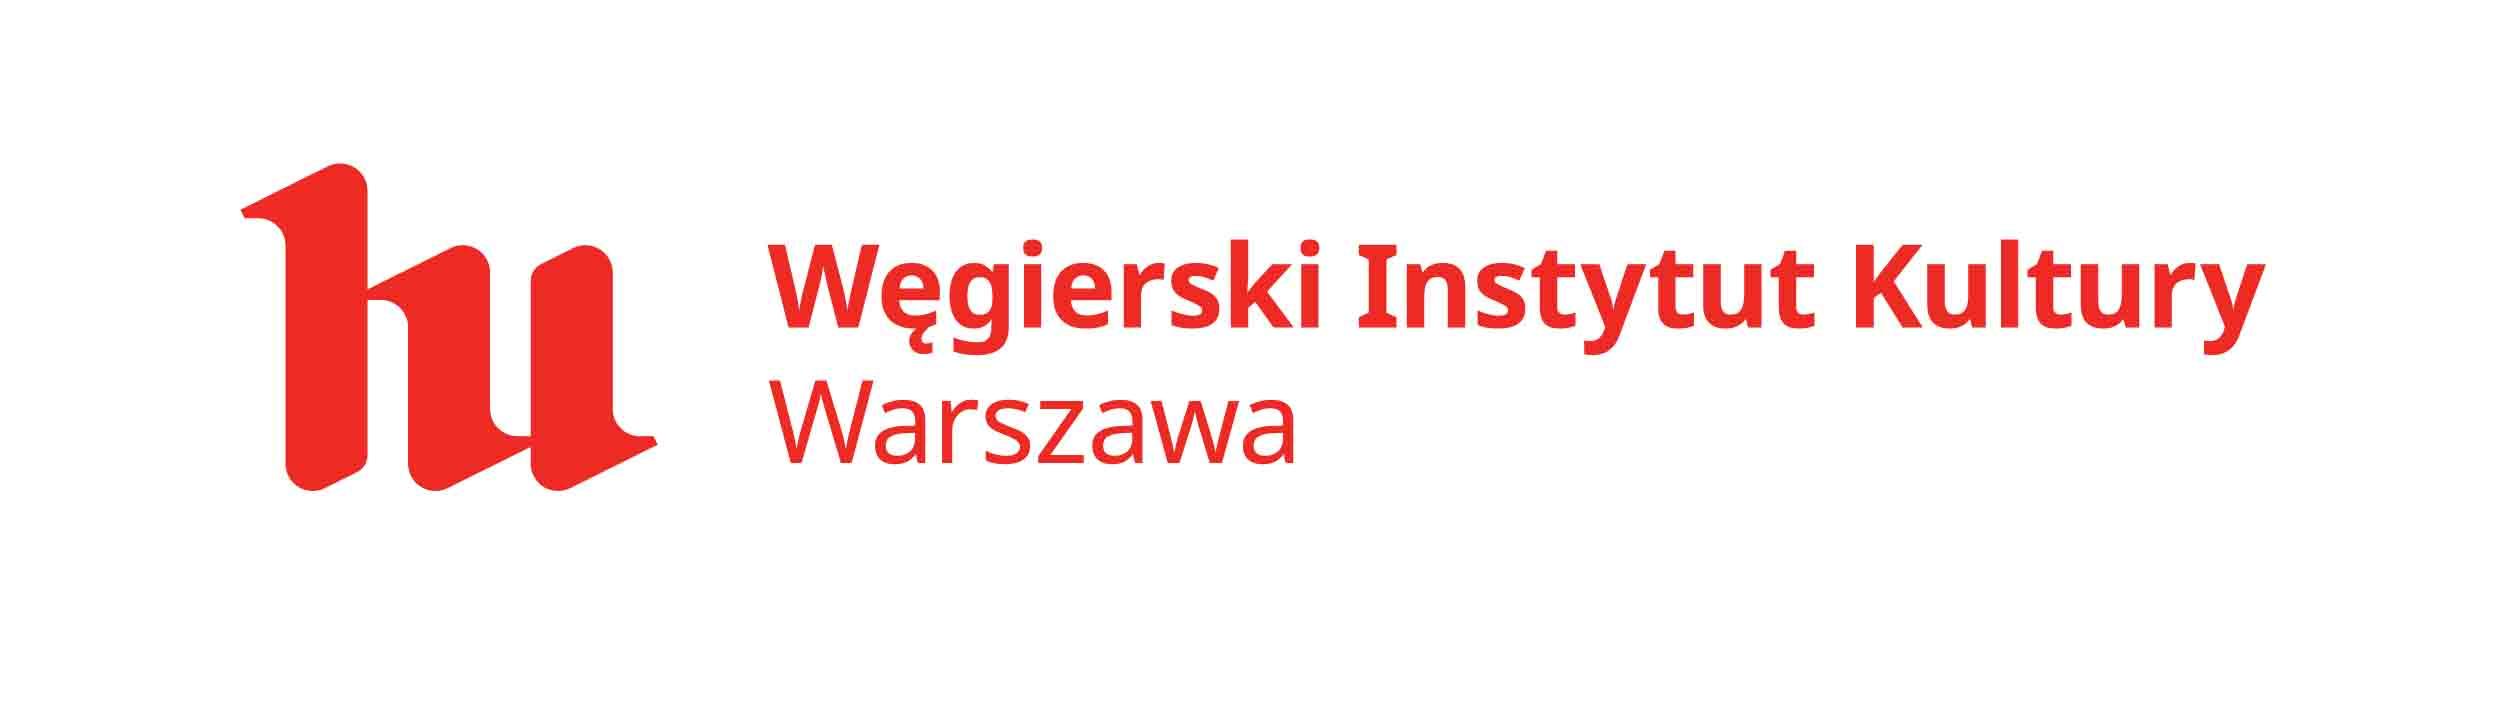 grafika: logo Węgierskiego Instytutu Kultury